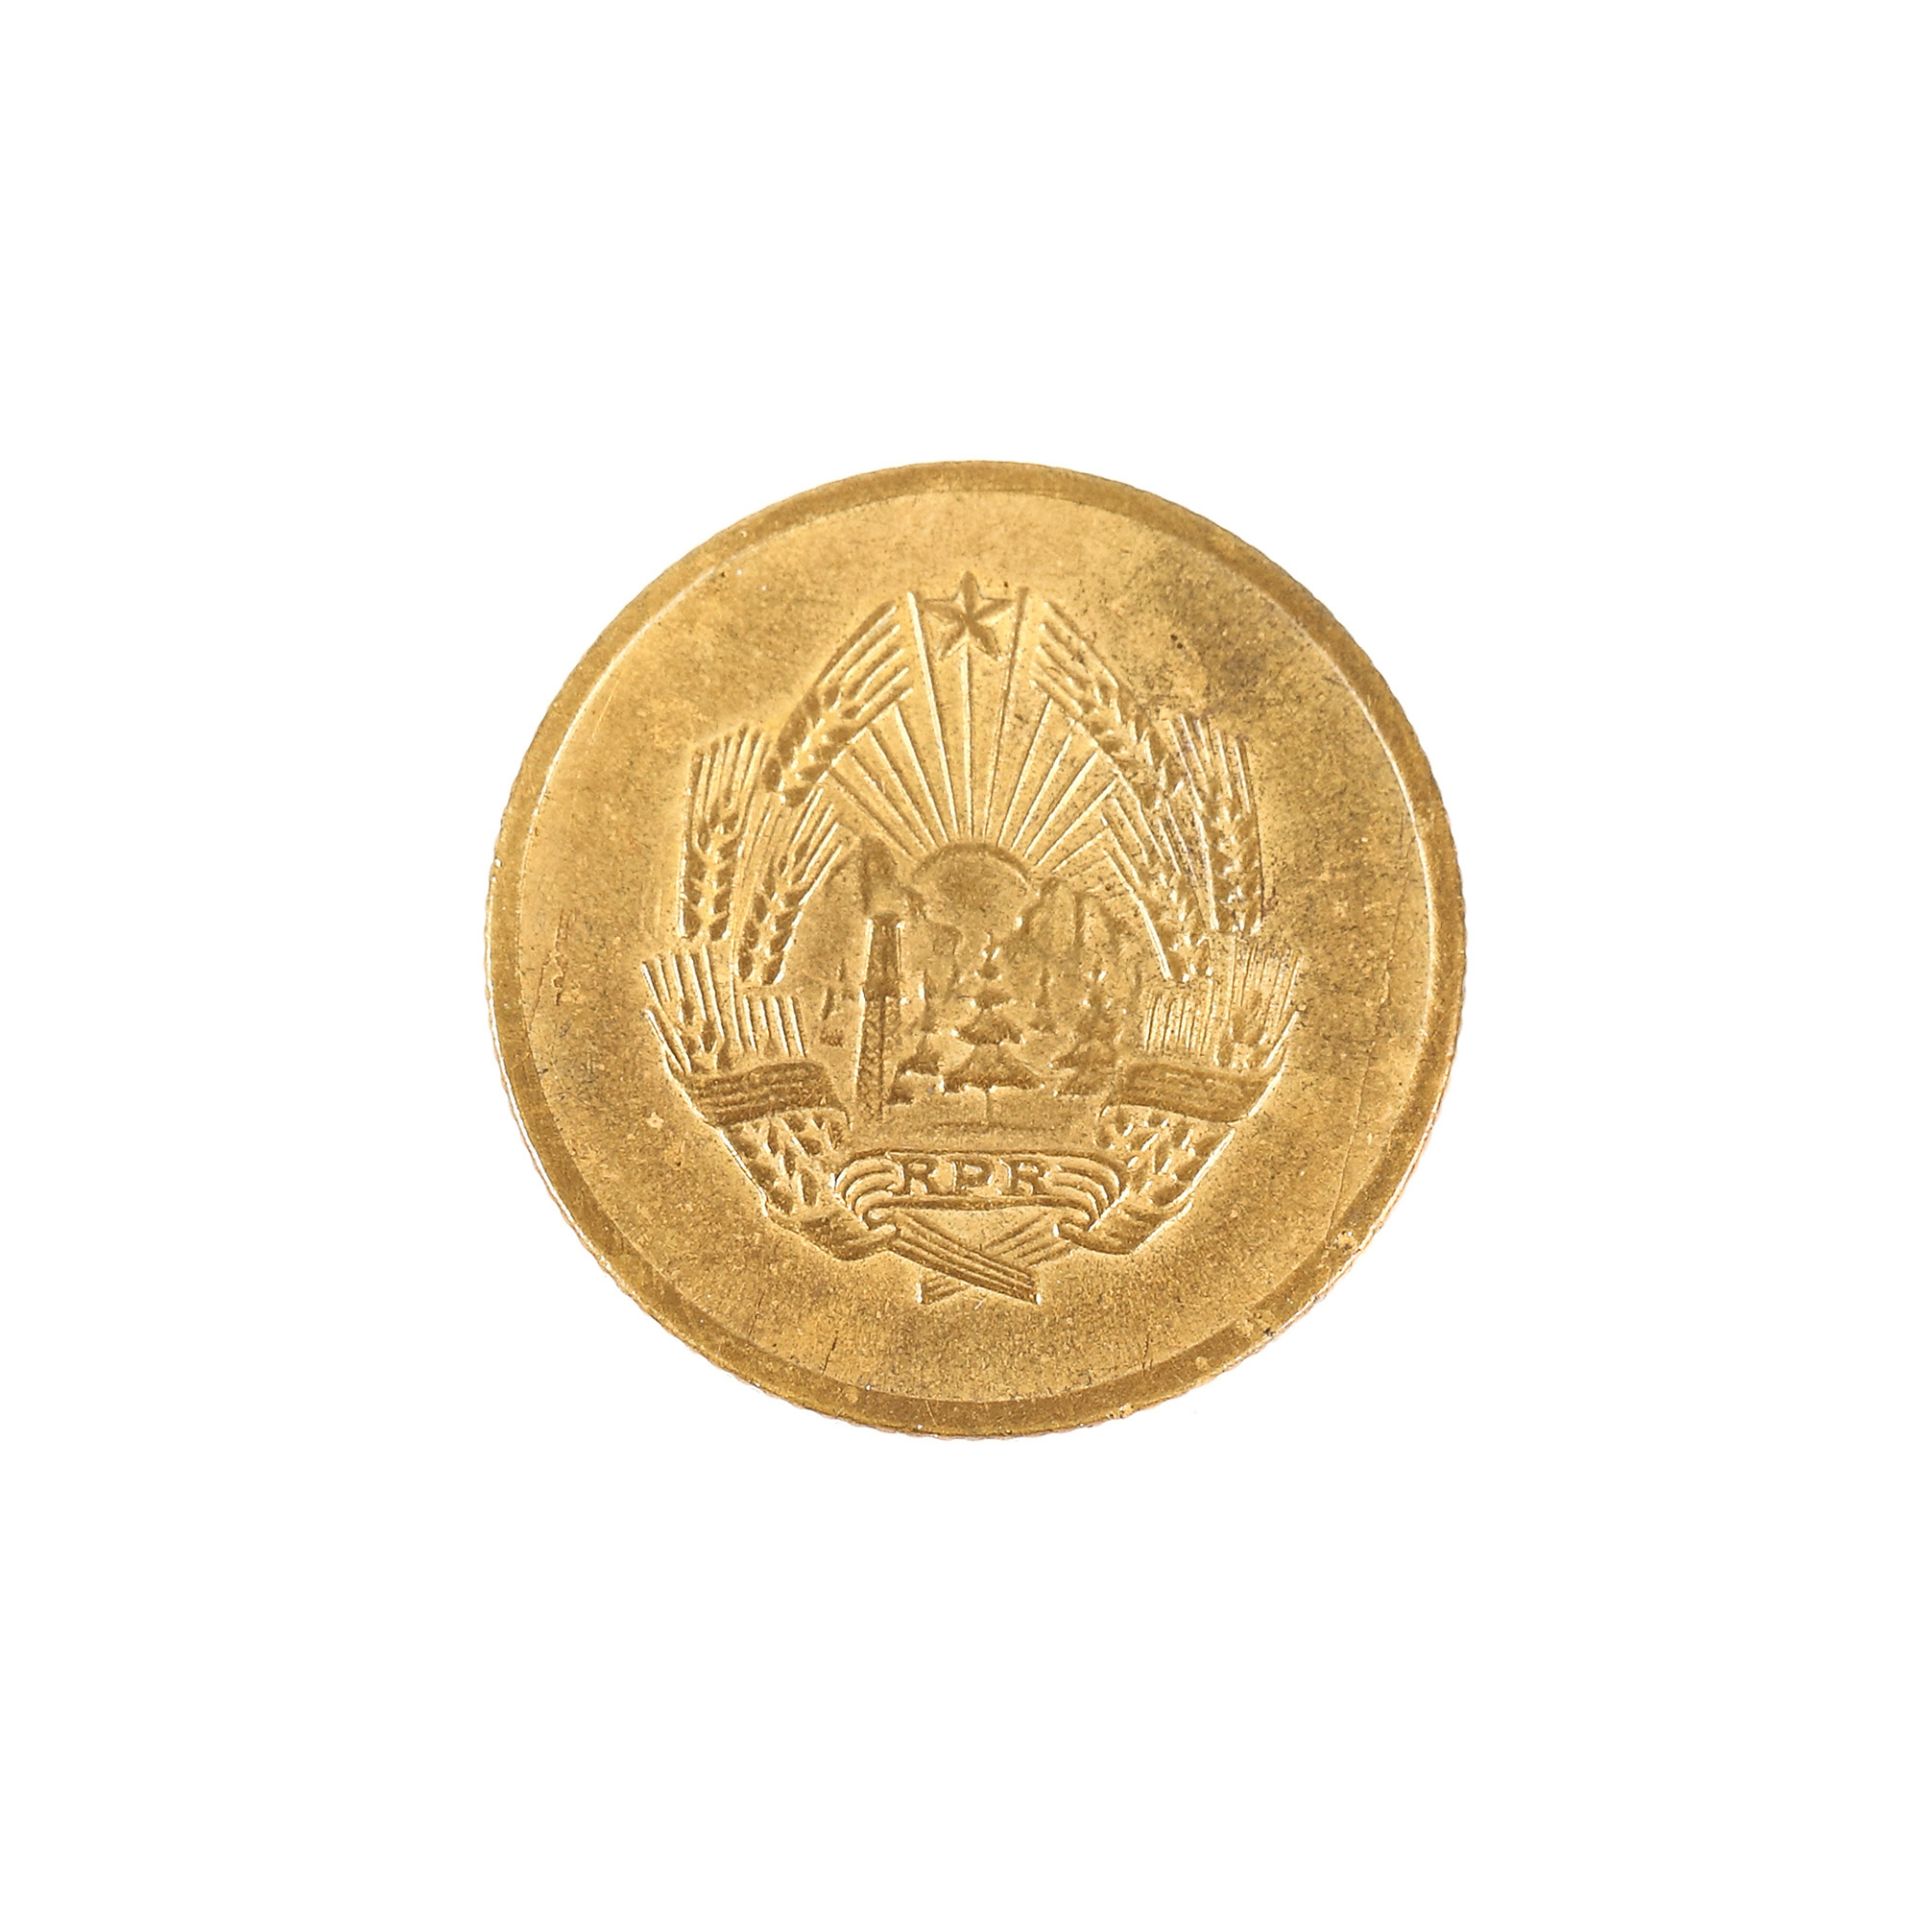 3 Bani 1954 coin - Image 2 of 3